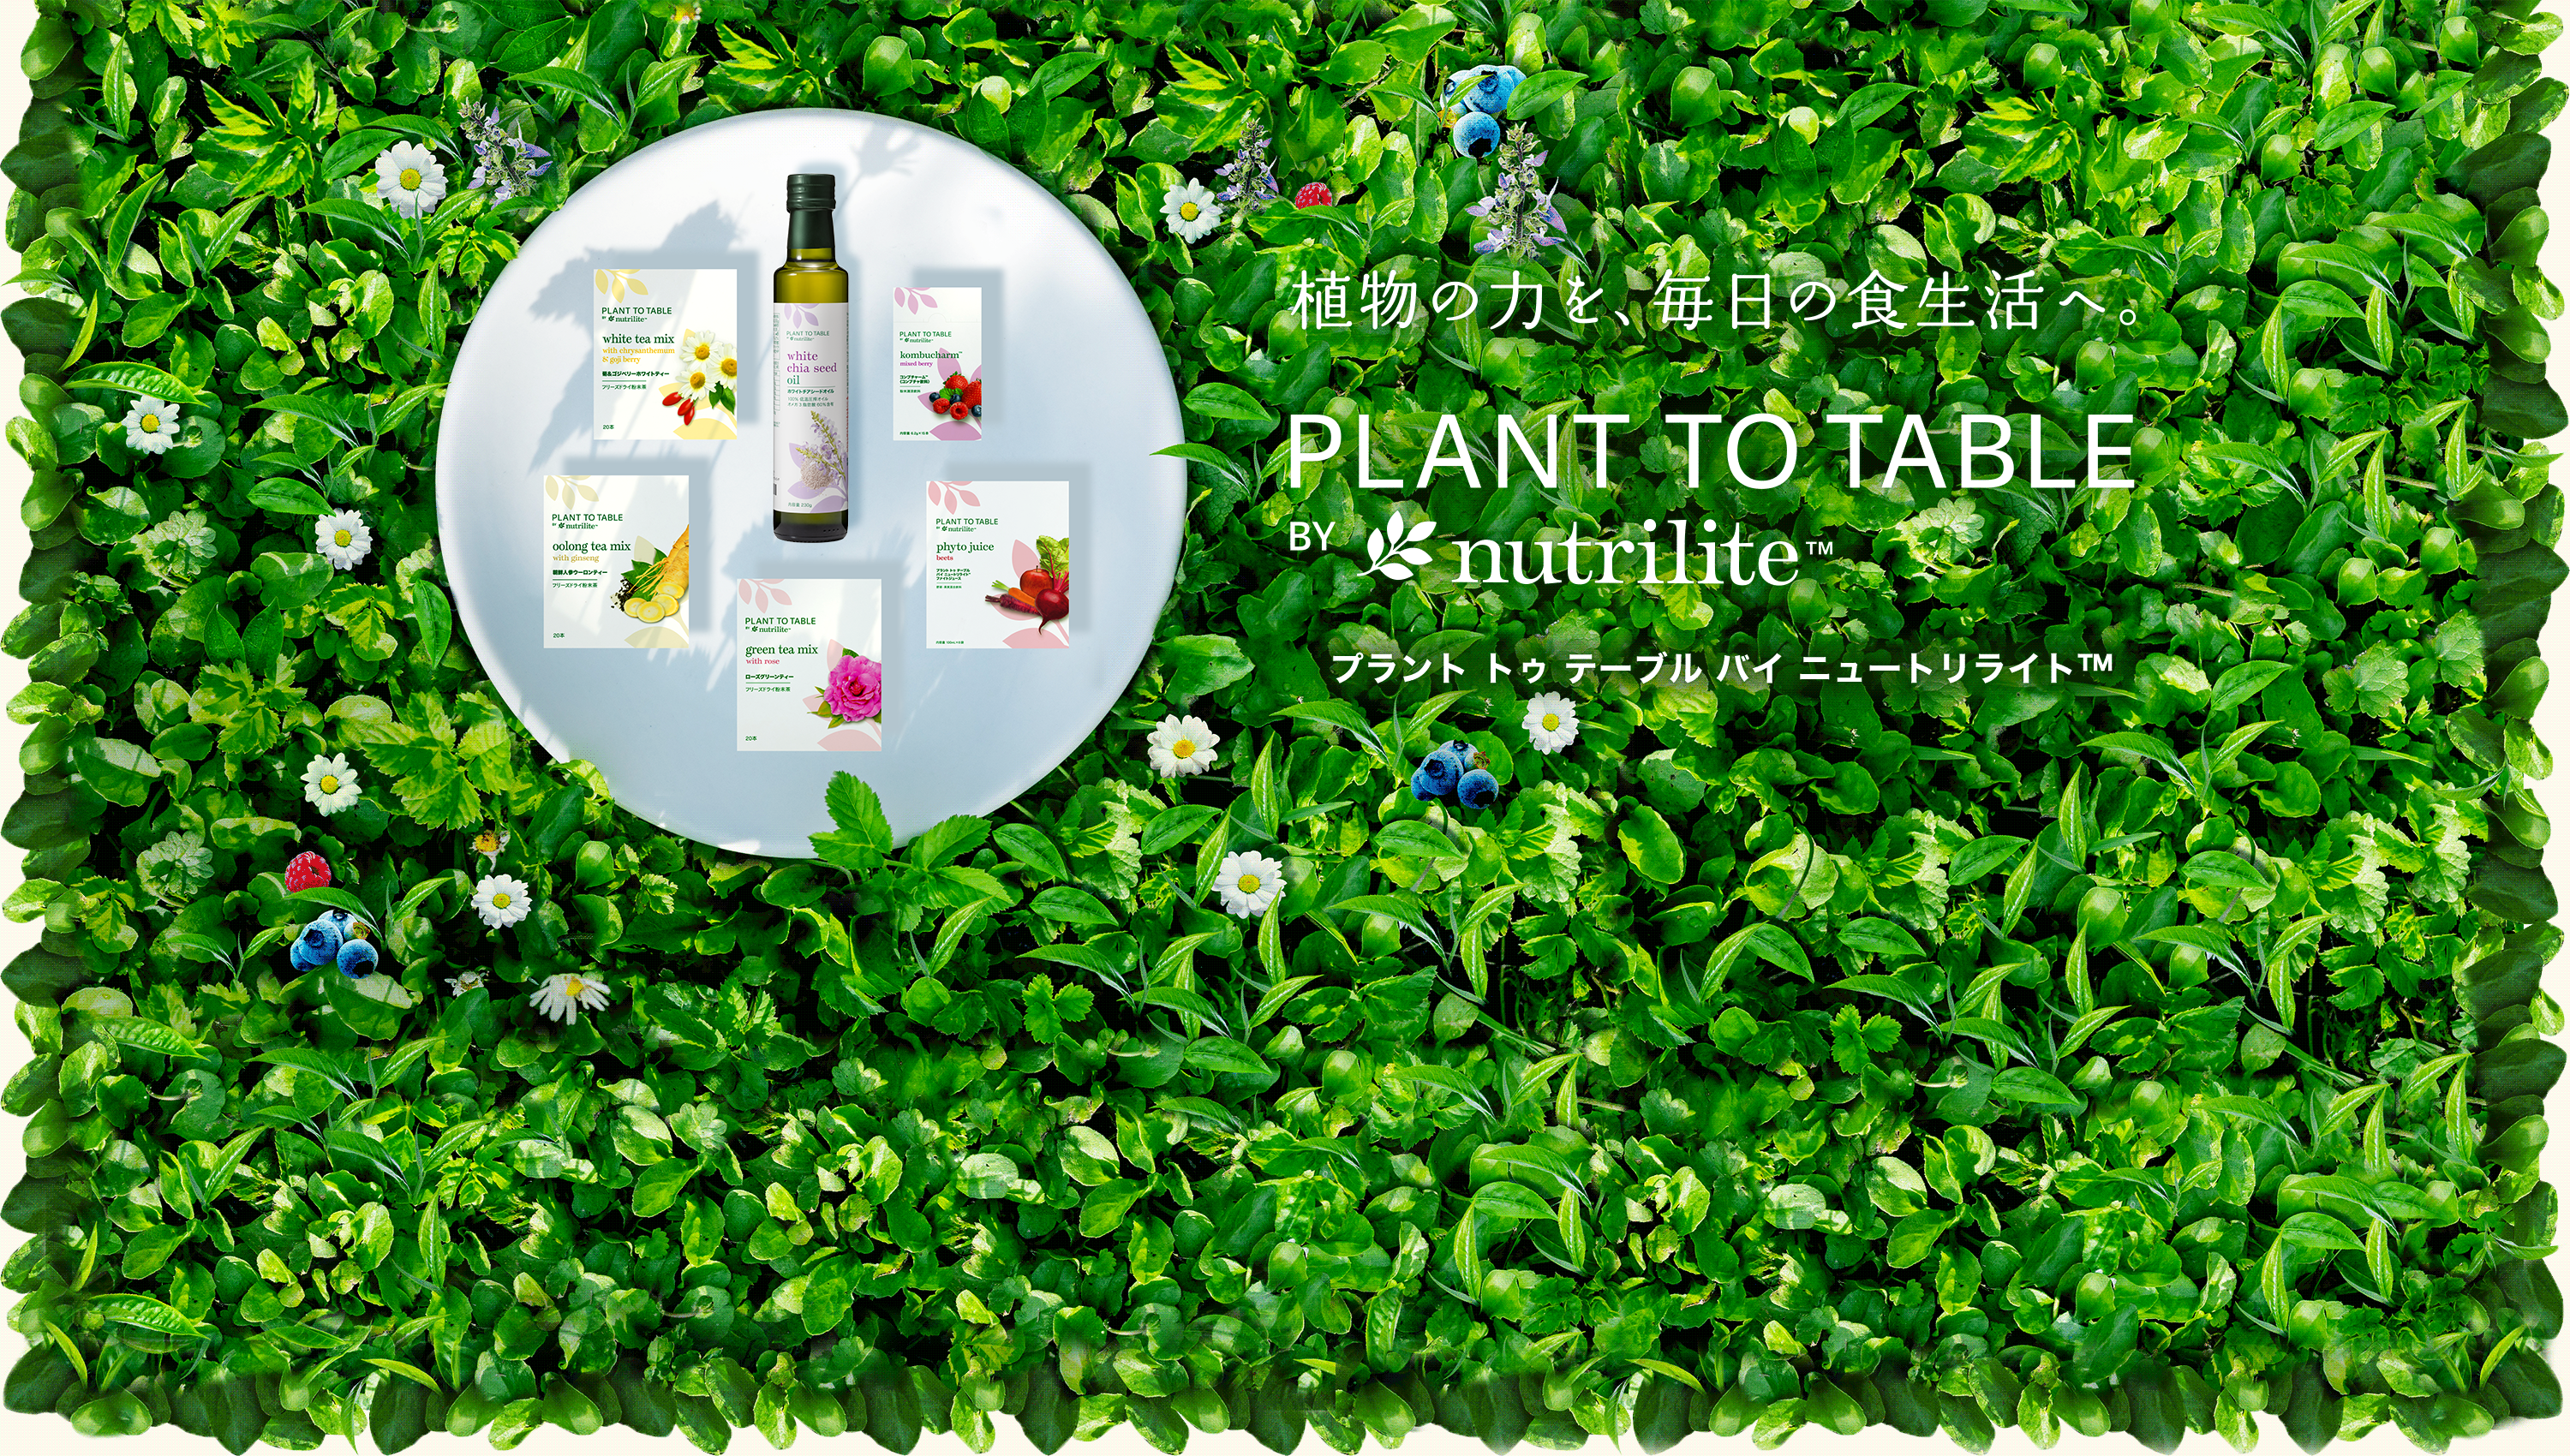 植物の力を、毎日の食生活へ。 PLANT TO TABLE BY nutrilit™ プラント トゥ テーブル バイ ニュートリライト™